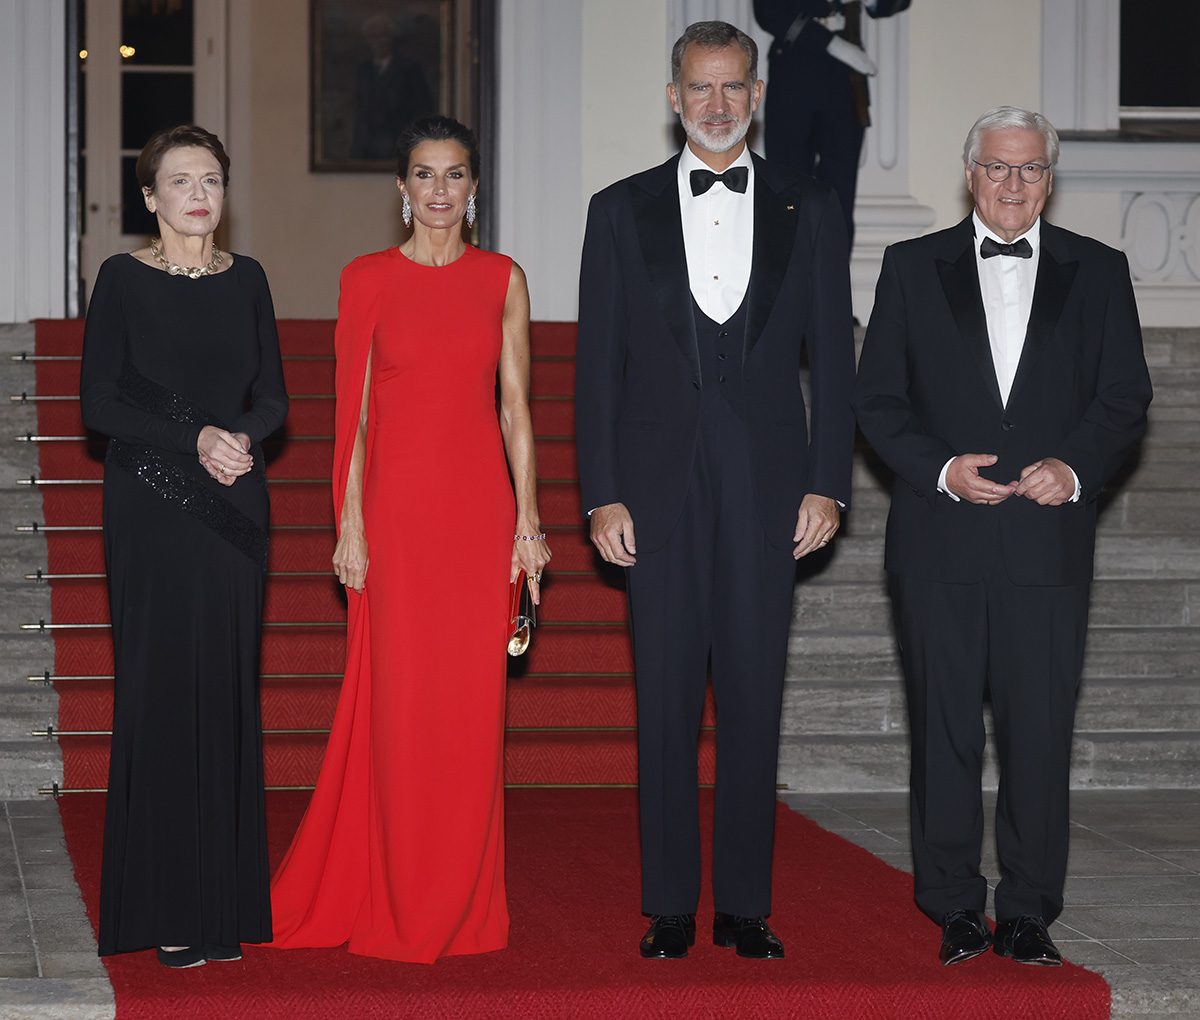 Los reyes Letizia y Felipe VI, como dos estrellas de cine en la cena de gala en Alemania